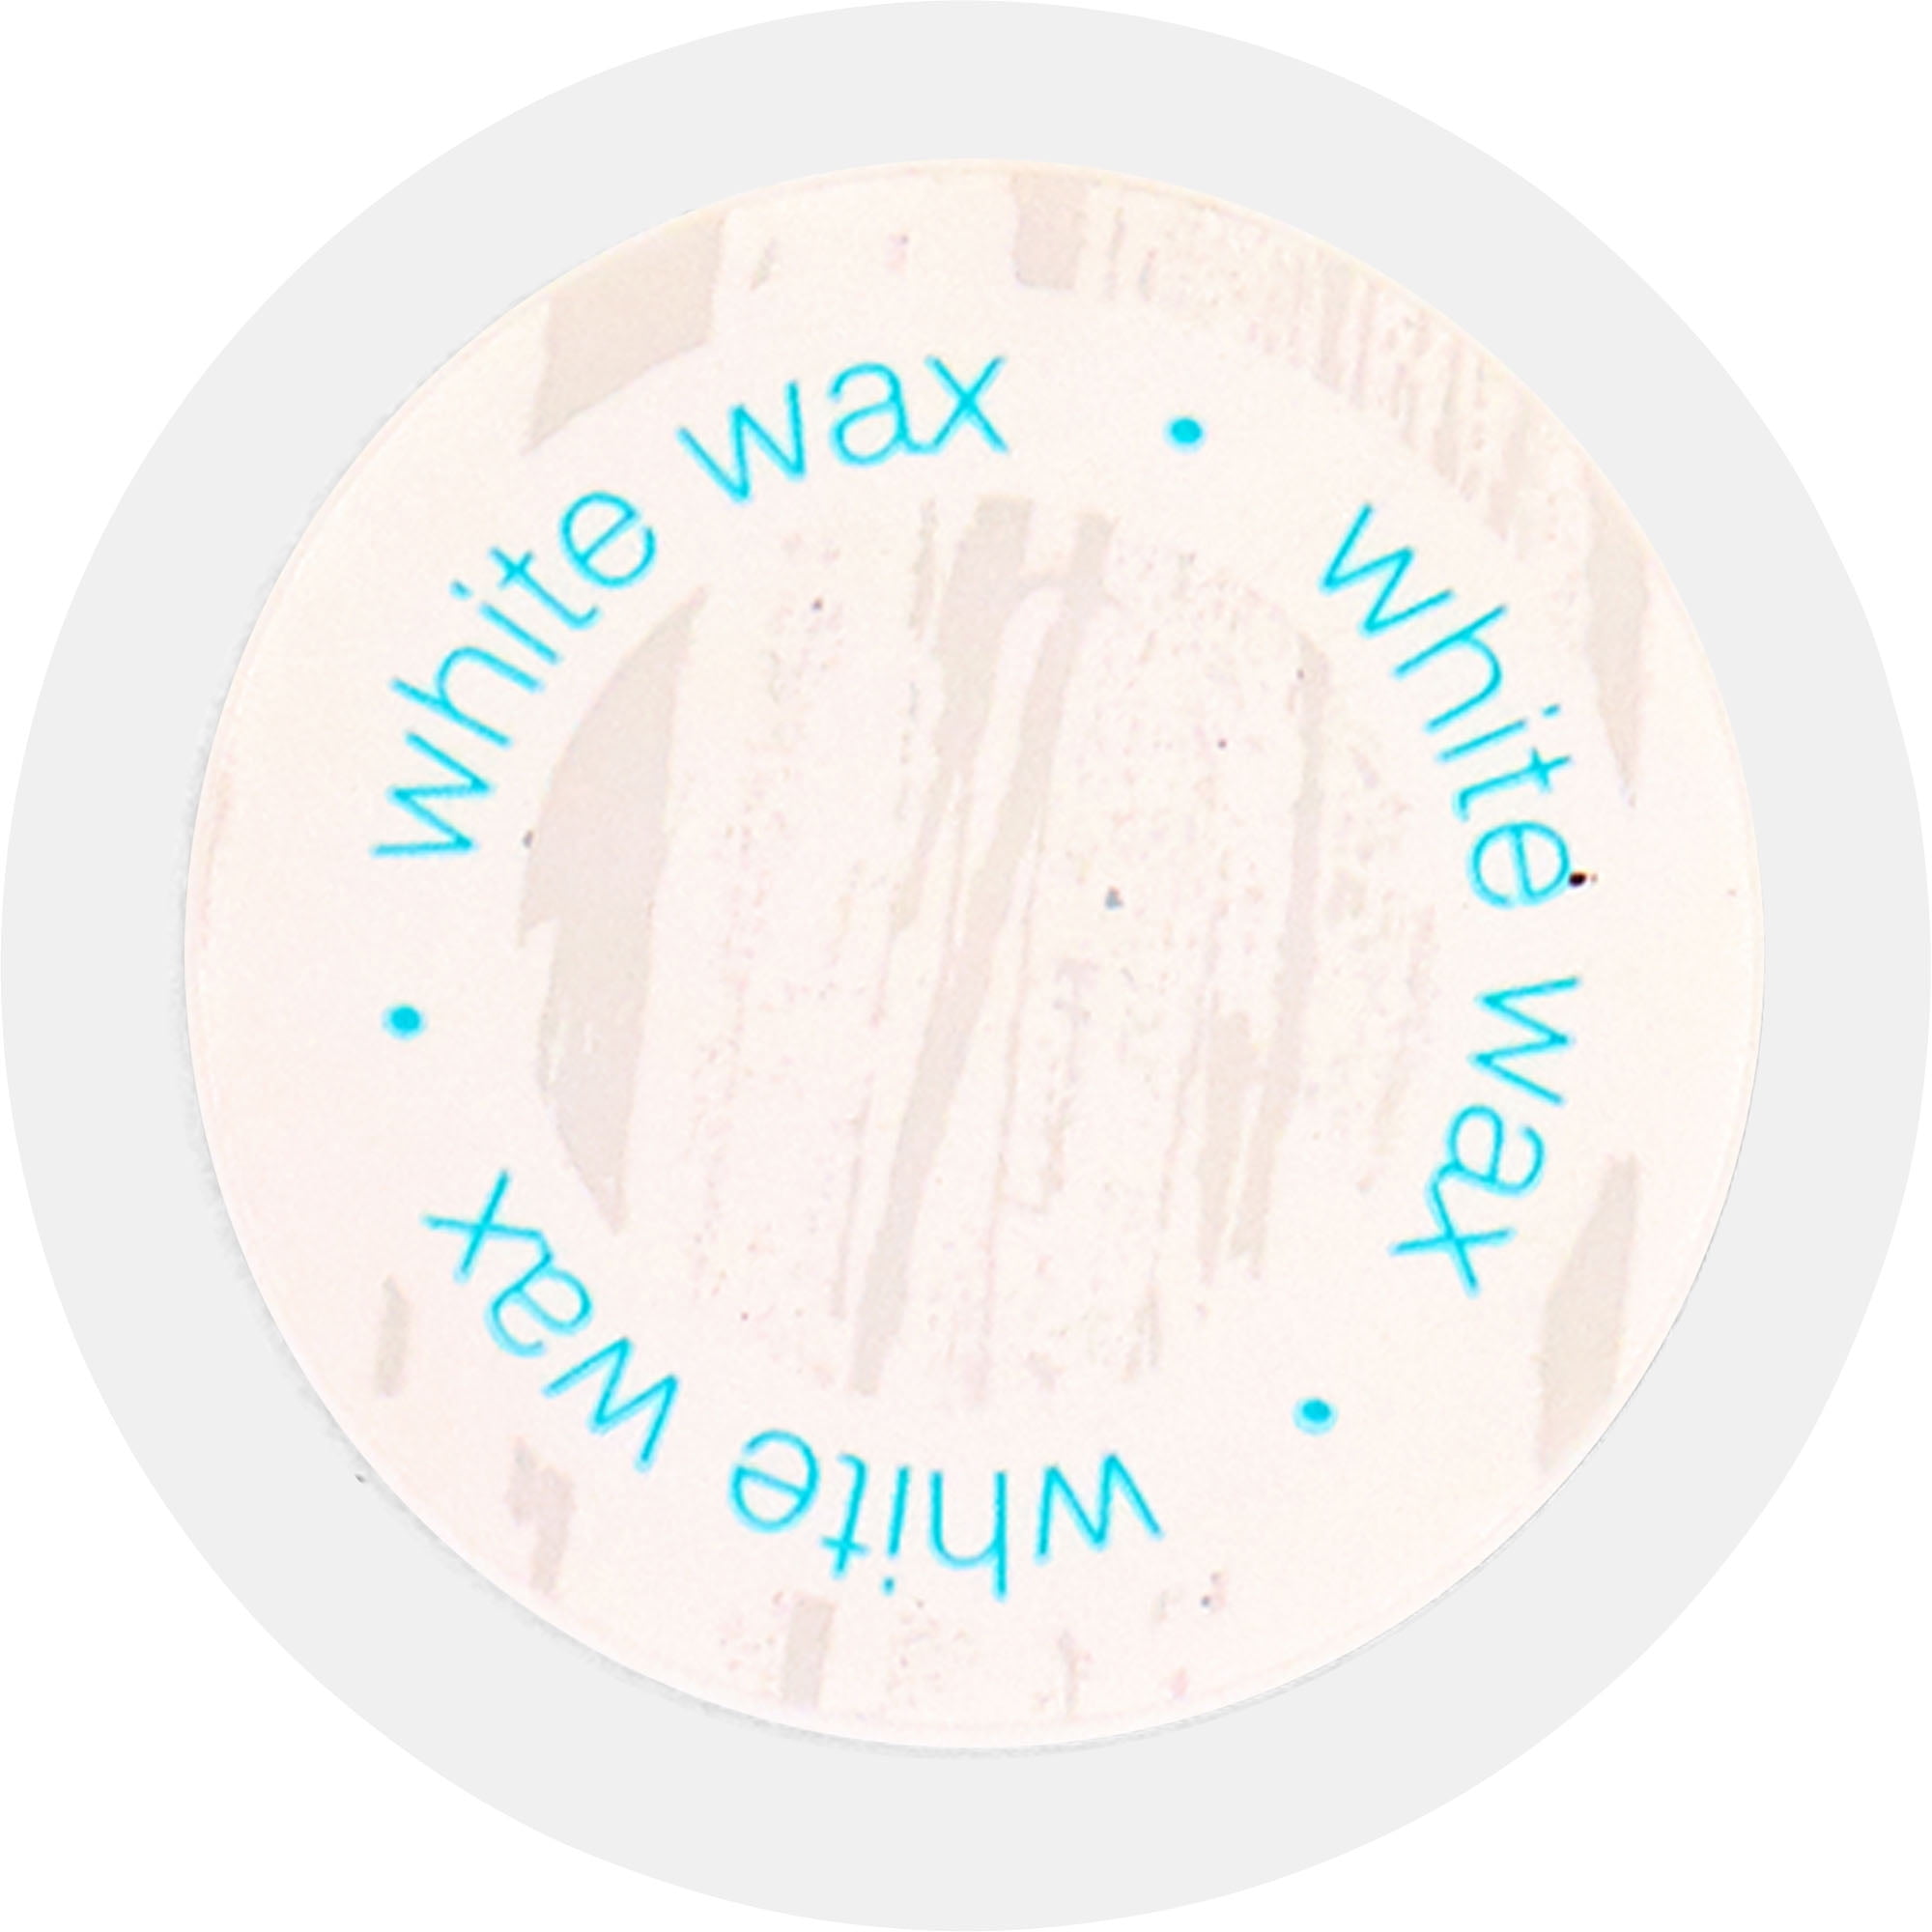 Shop Plaid Waverly ® Inspirations Wax - Antique, 16 oz. - 60761E - 60761E